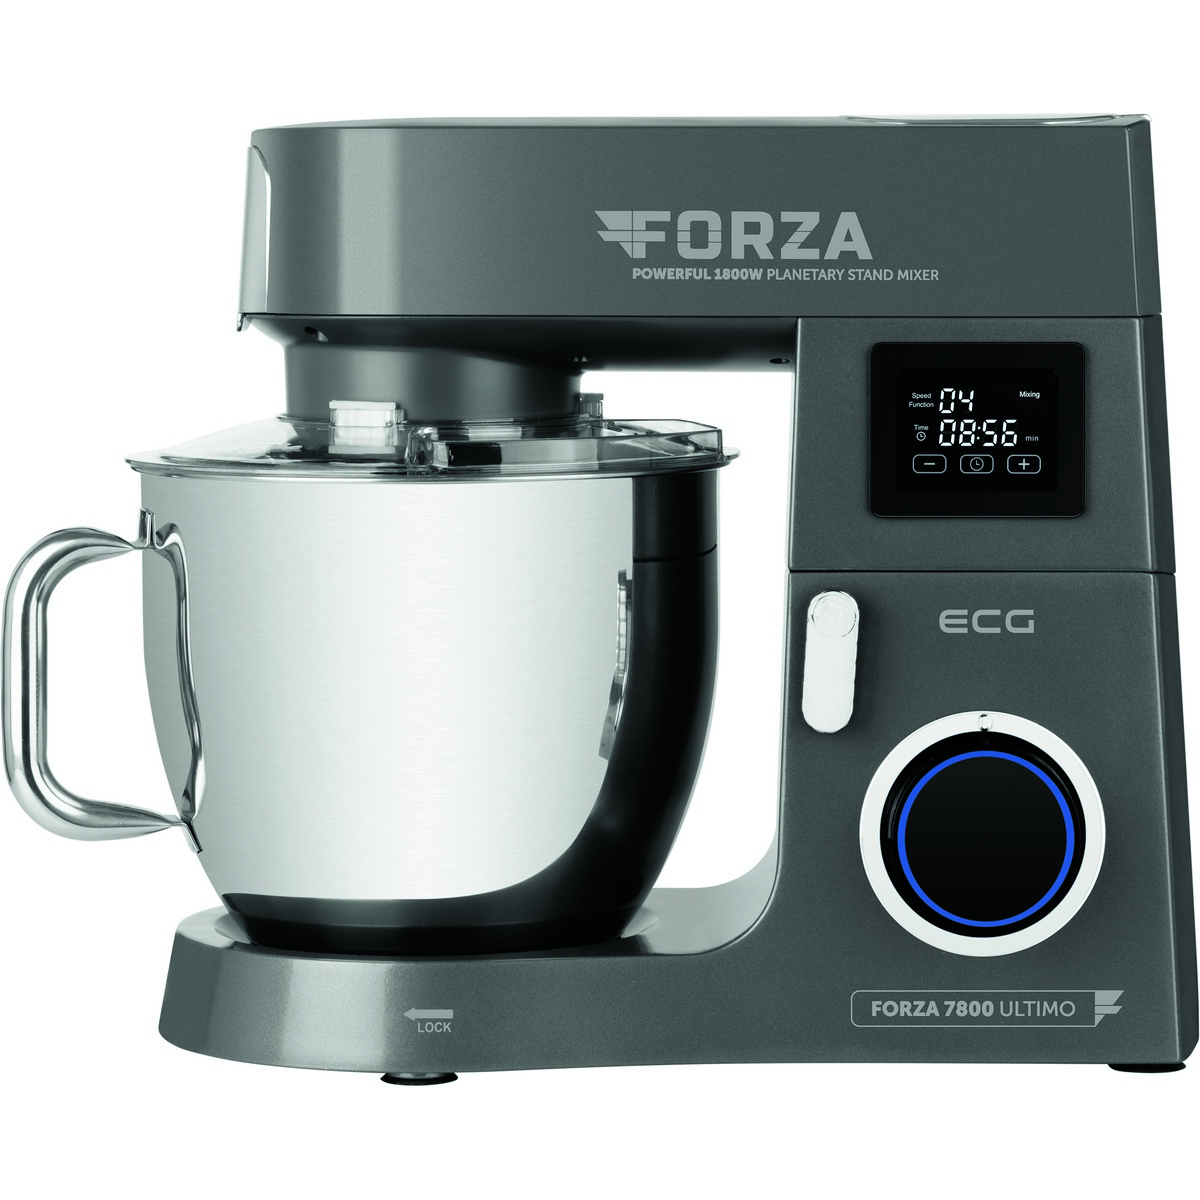 ECG Forza 7800 kuchyňský robot Ultimo Scuro ECG